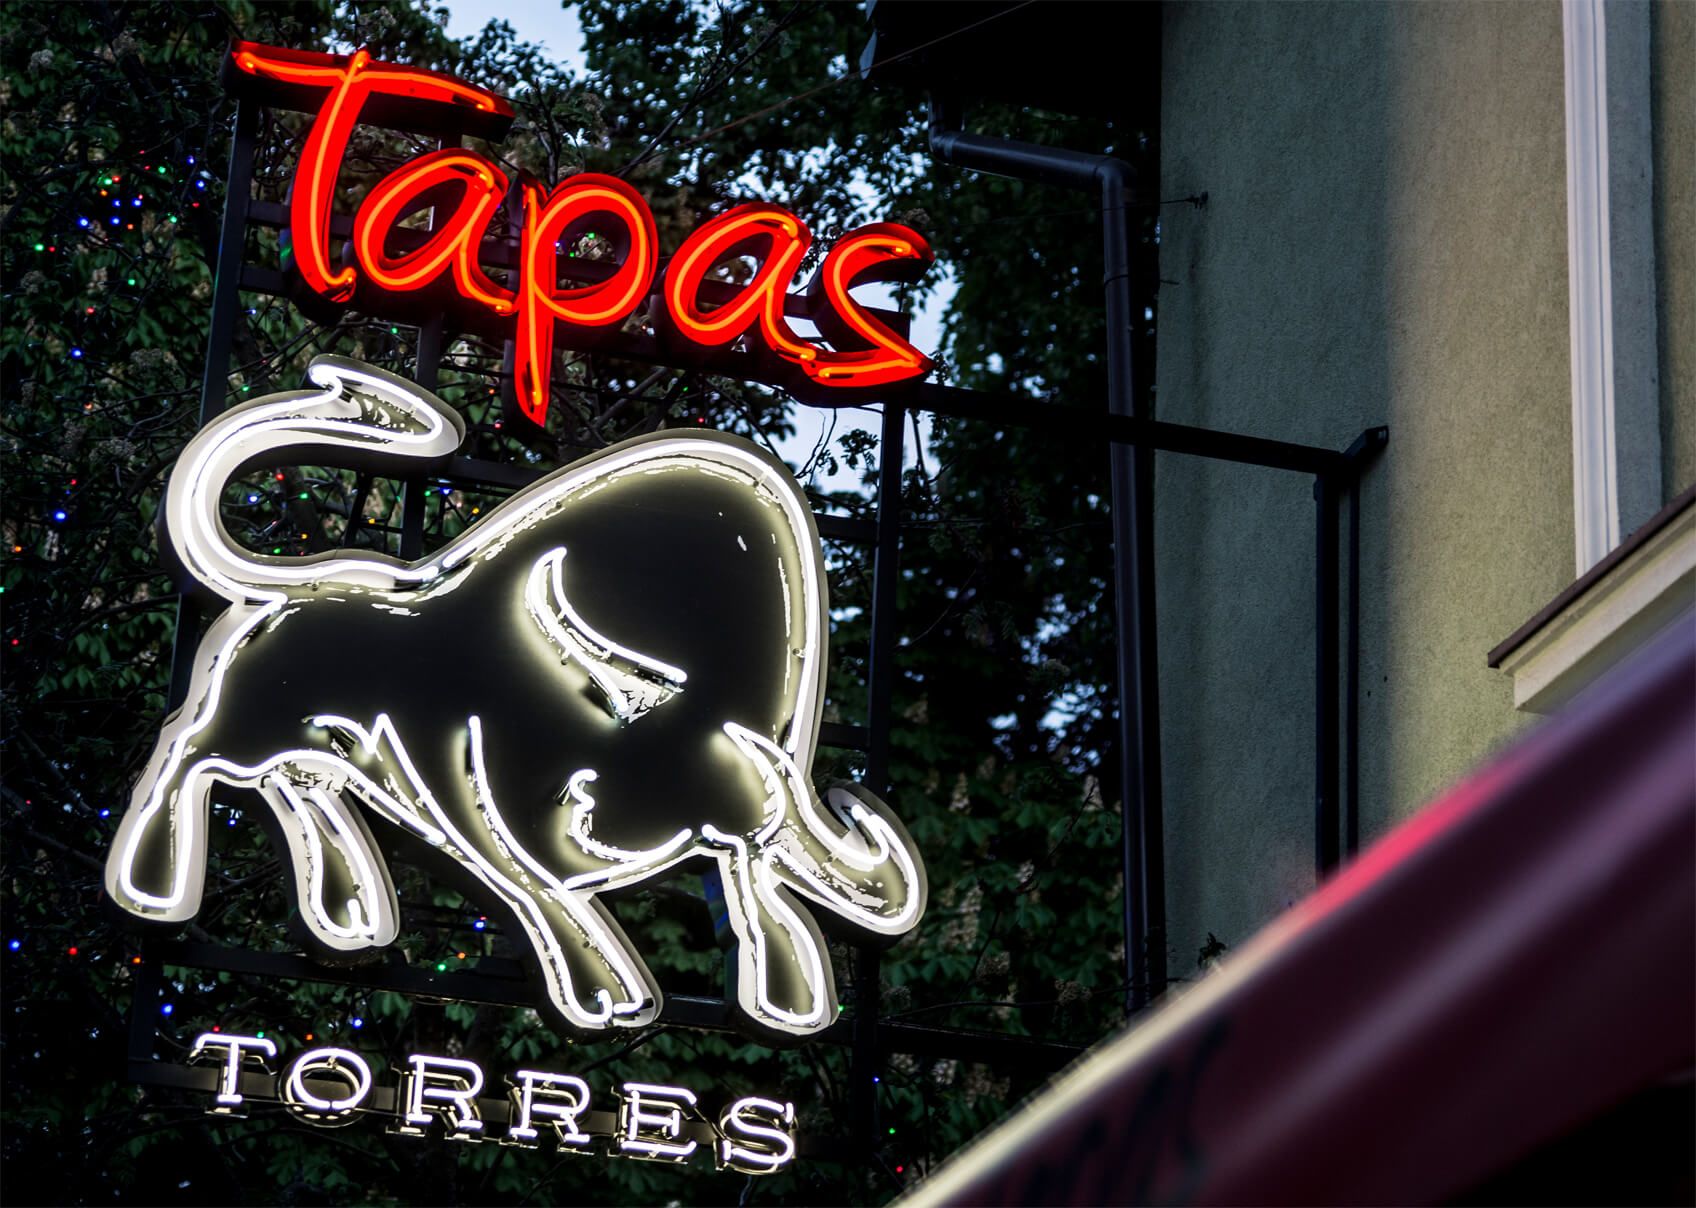 Tapas torres - neon-tapas-torres-byk-neon-über-dem-Eingang-zum-Restaurant-neon-beleuchtet-neon-räumlich-neon-in-Höhe-neon-an-einer-Säule-logo-neon-sopot-spainese-restaurant